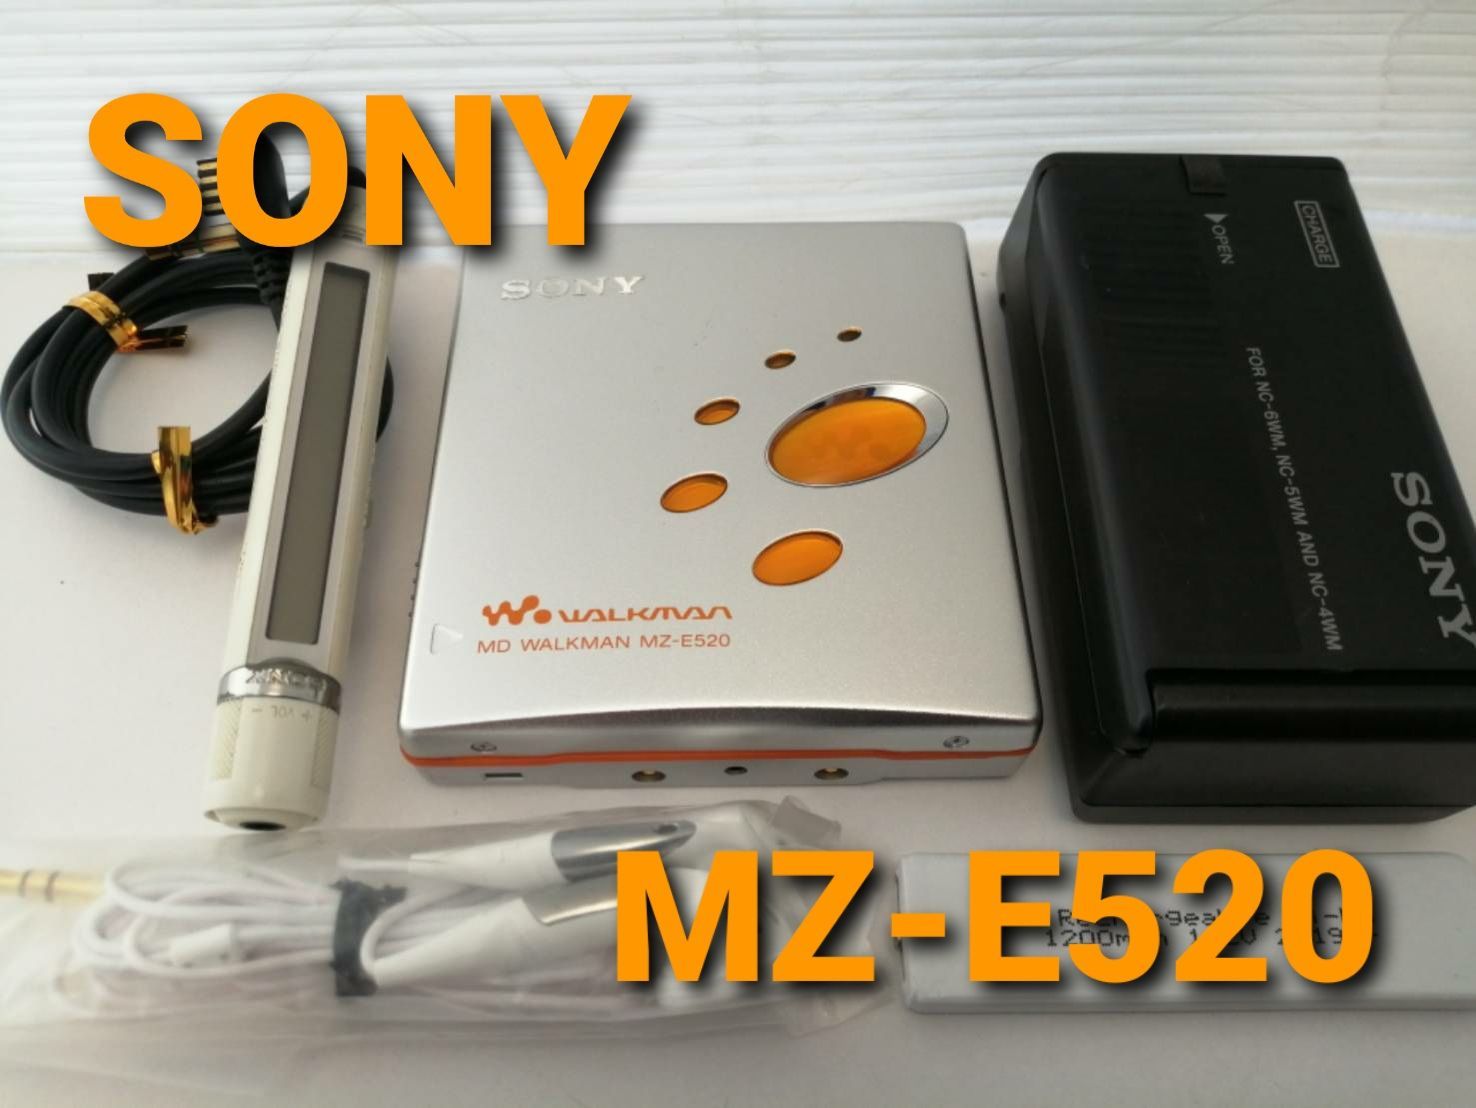 ソニー MDウォークマン MZ-E520 オレンジ - ポータブルオーディオ